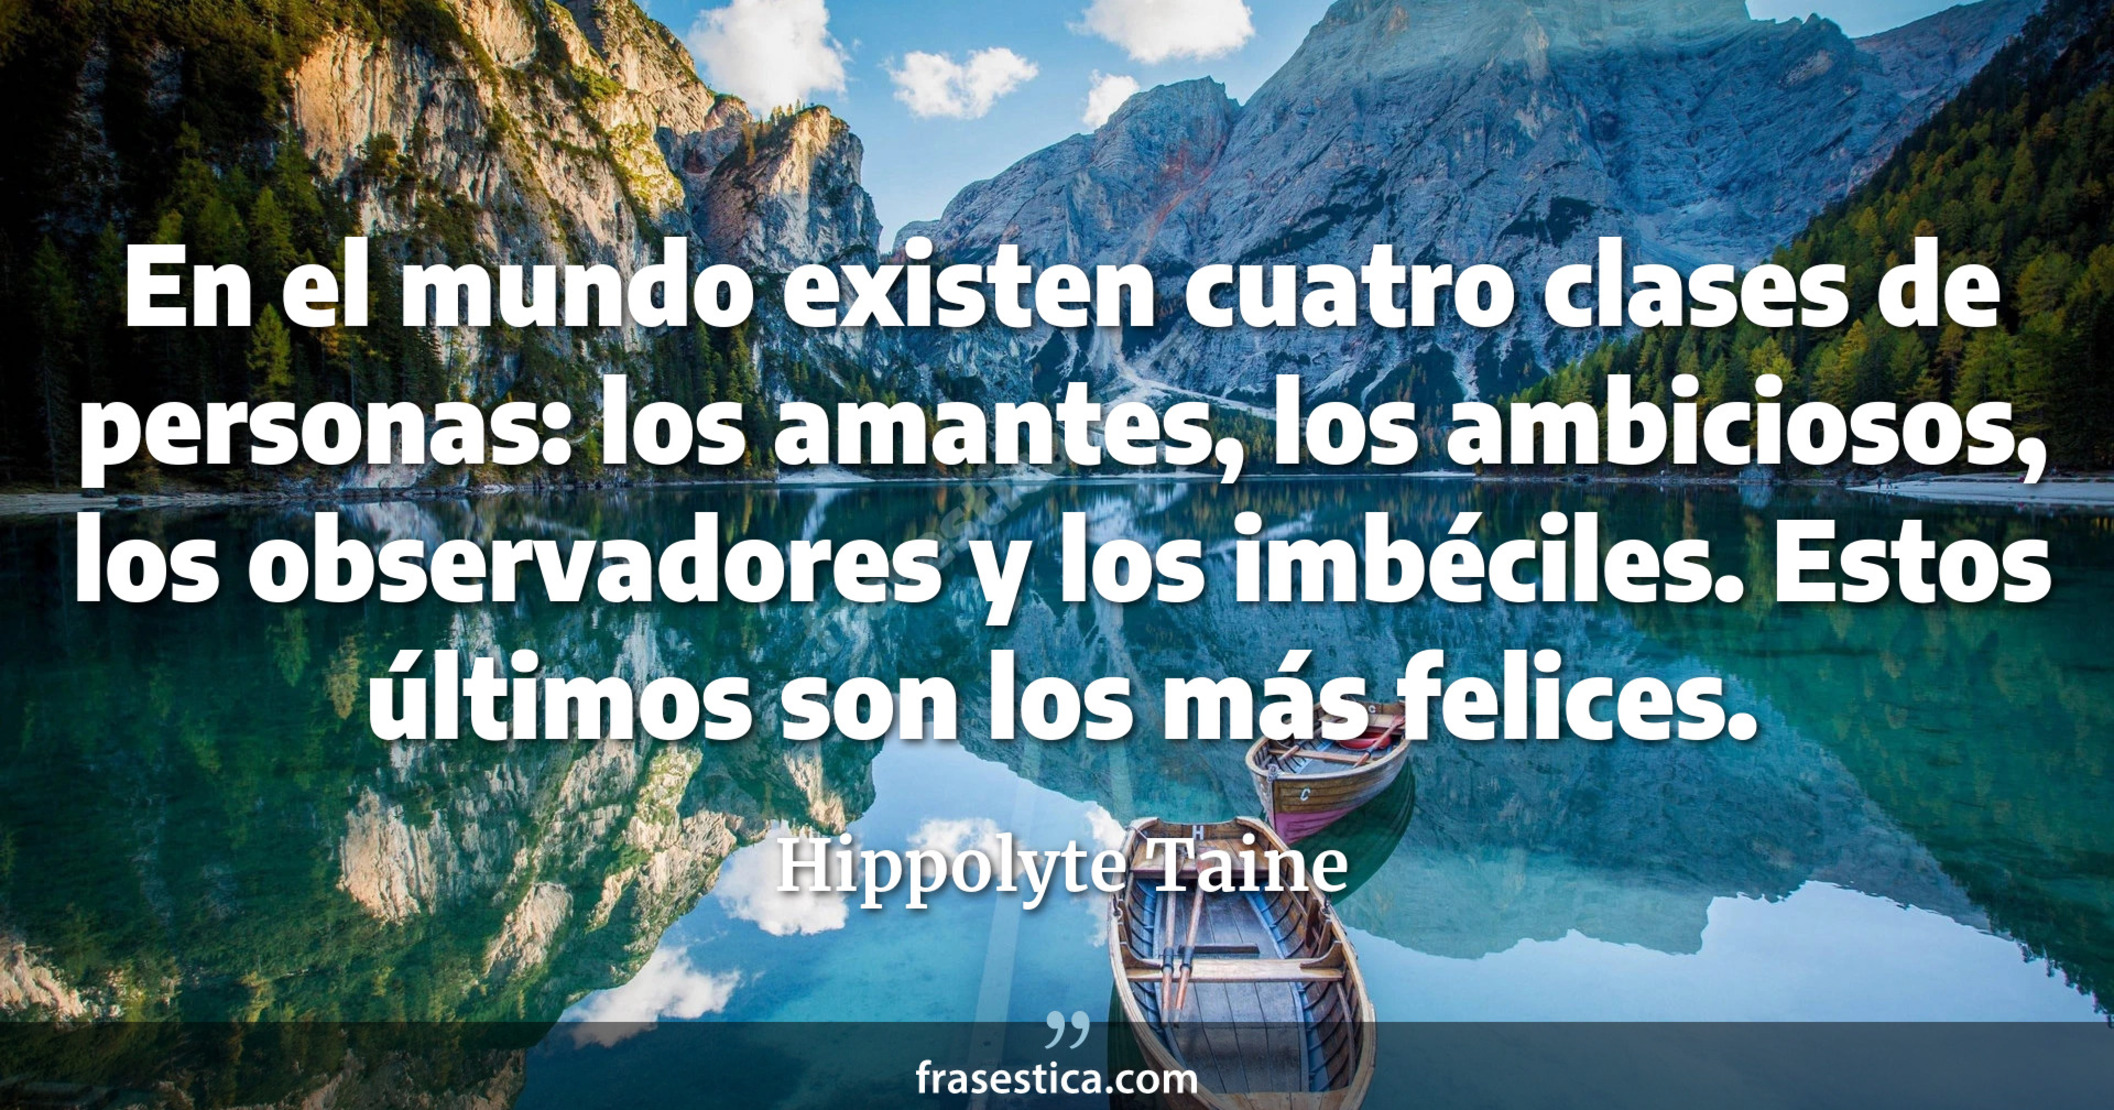 En el mundo existen cuatro clases de personas: los amantes, los ambiciosos, los observadores y los imbéciles. Estos últimos son los más felices. - Hippolyte Taine